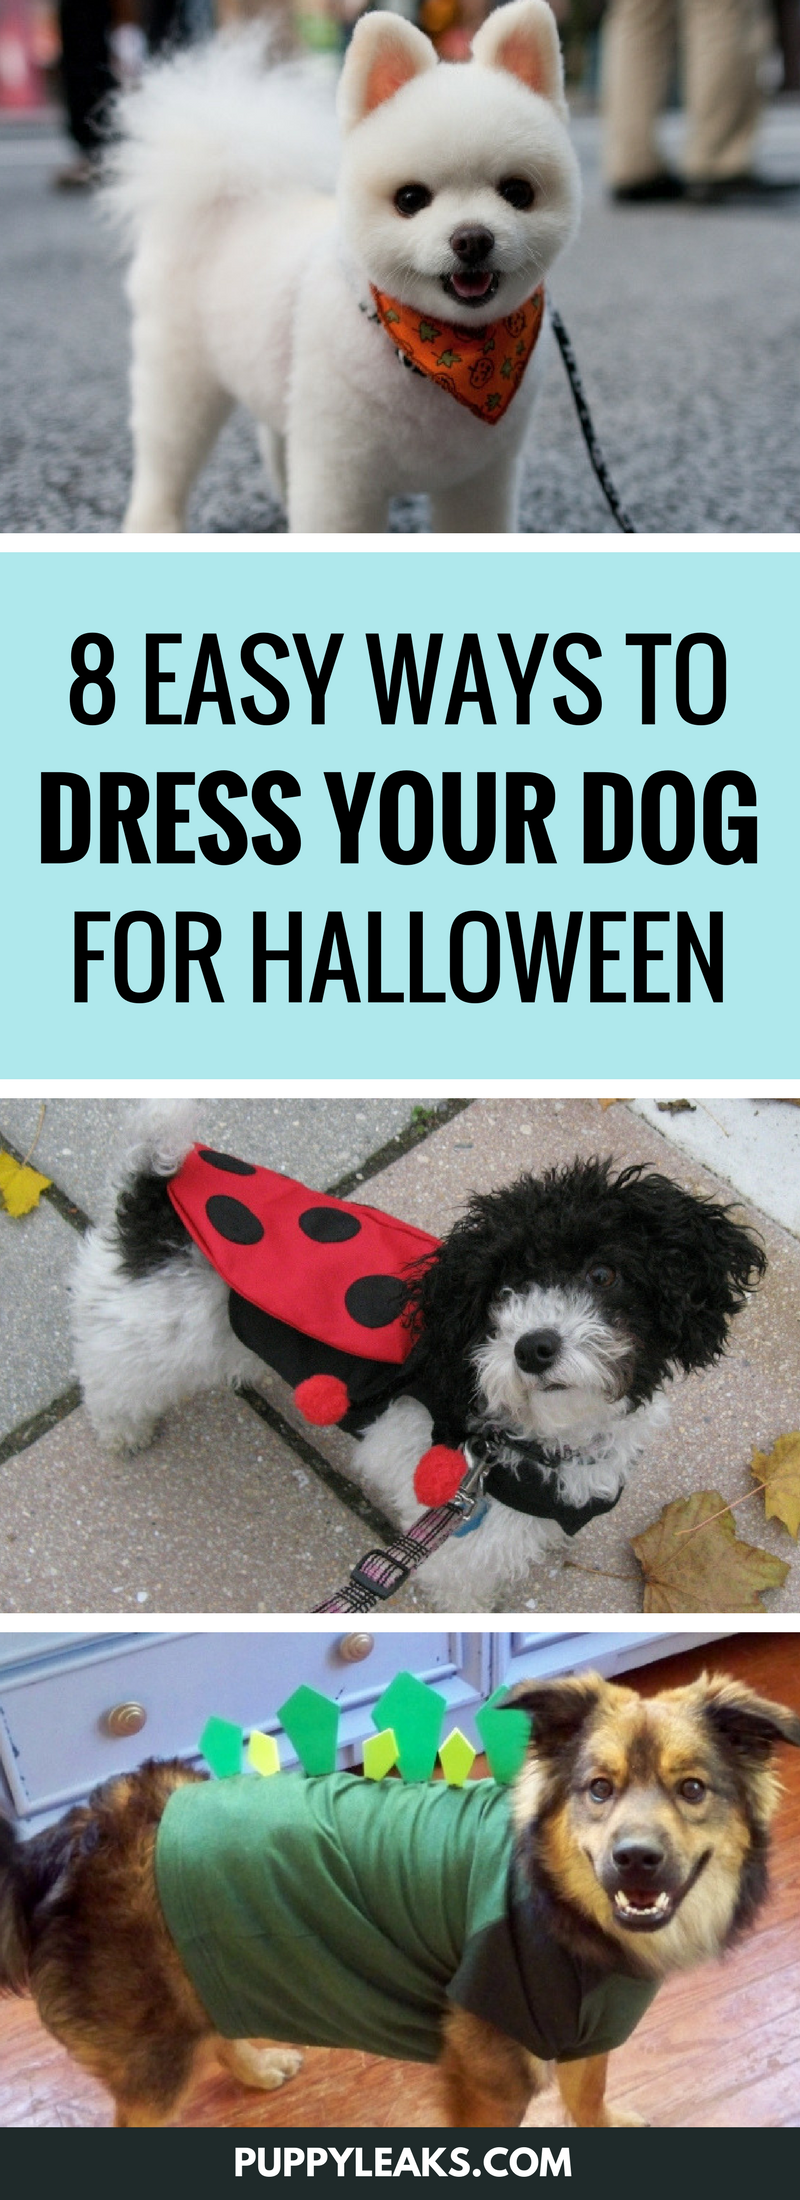 8 maneiras fáceis de vestir seu cachorro para o Halloween